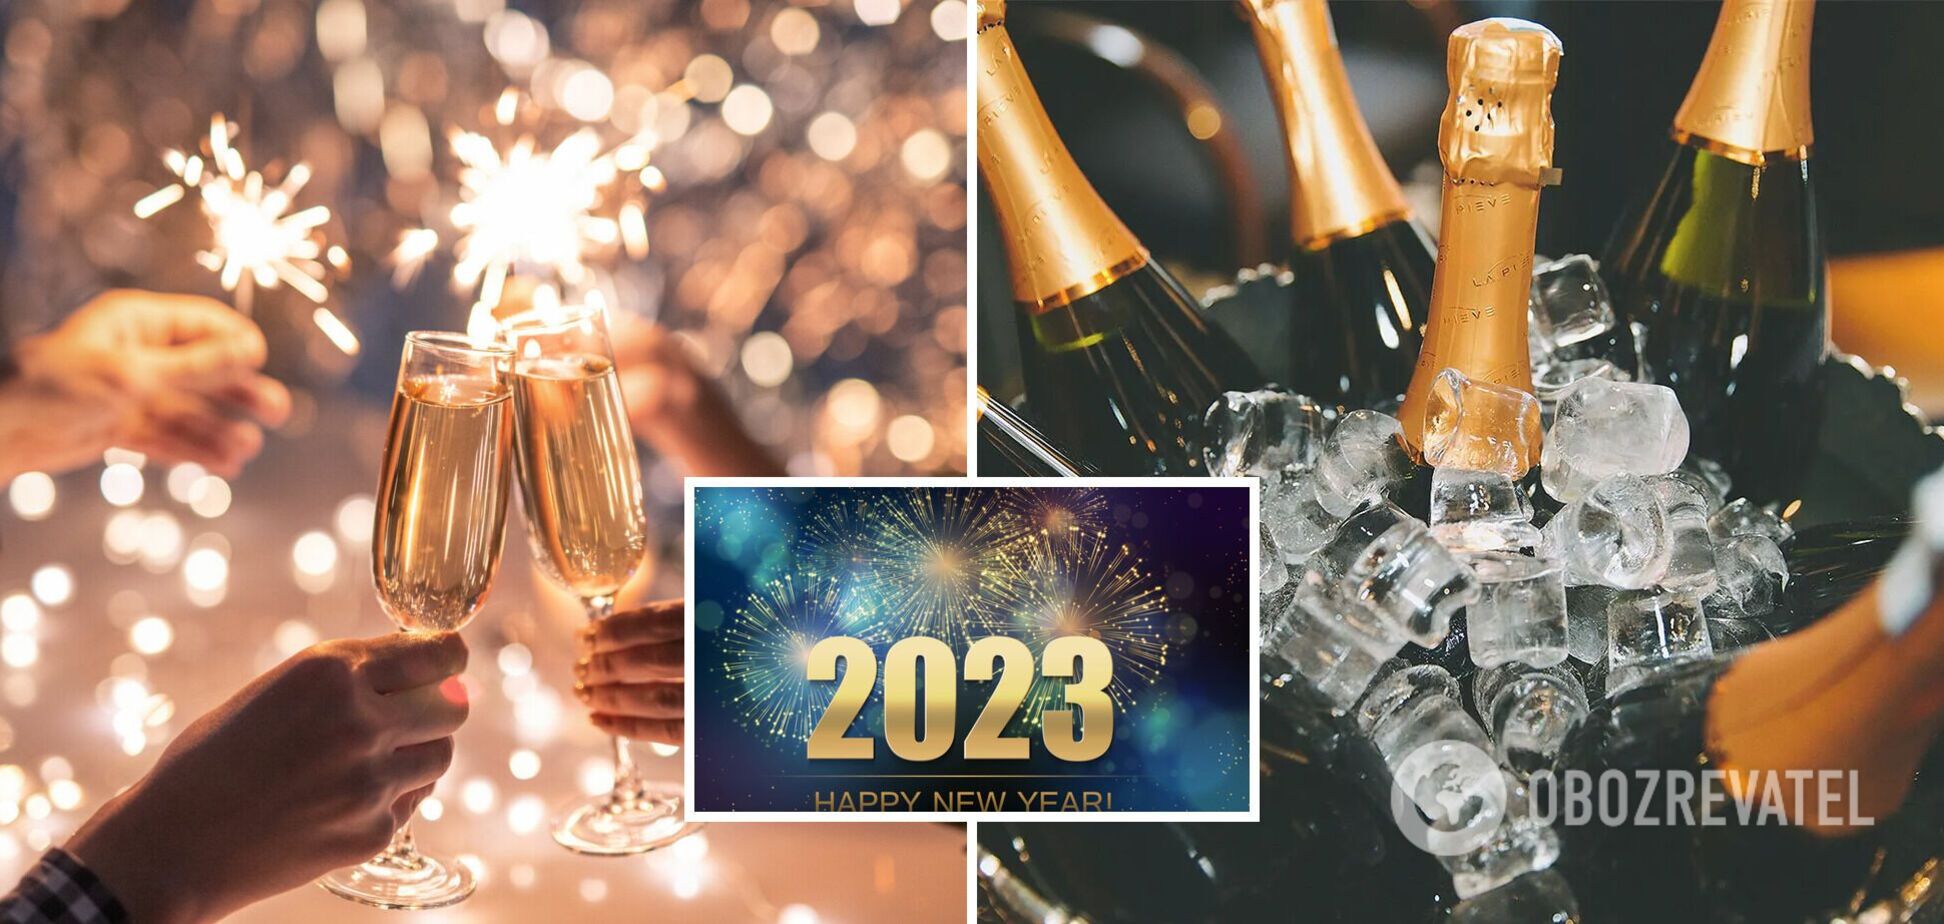 Новый год 2023: тосты и смешные пожелания на веселый вечер